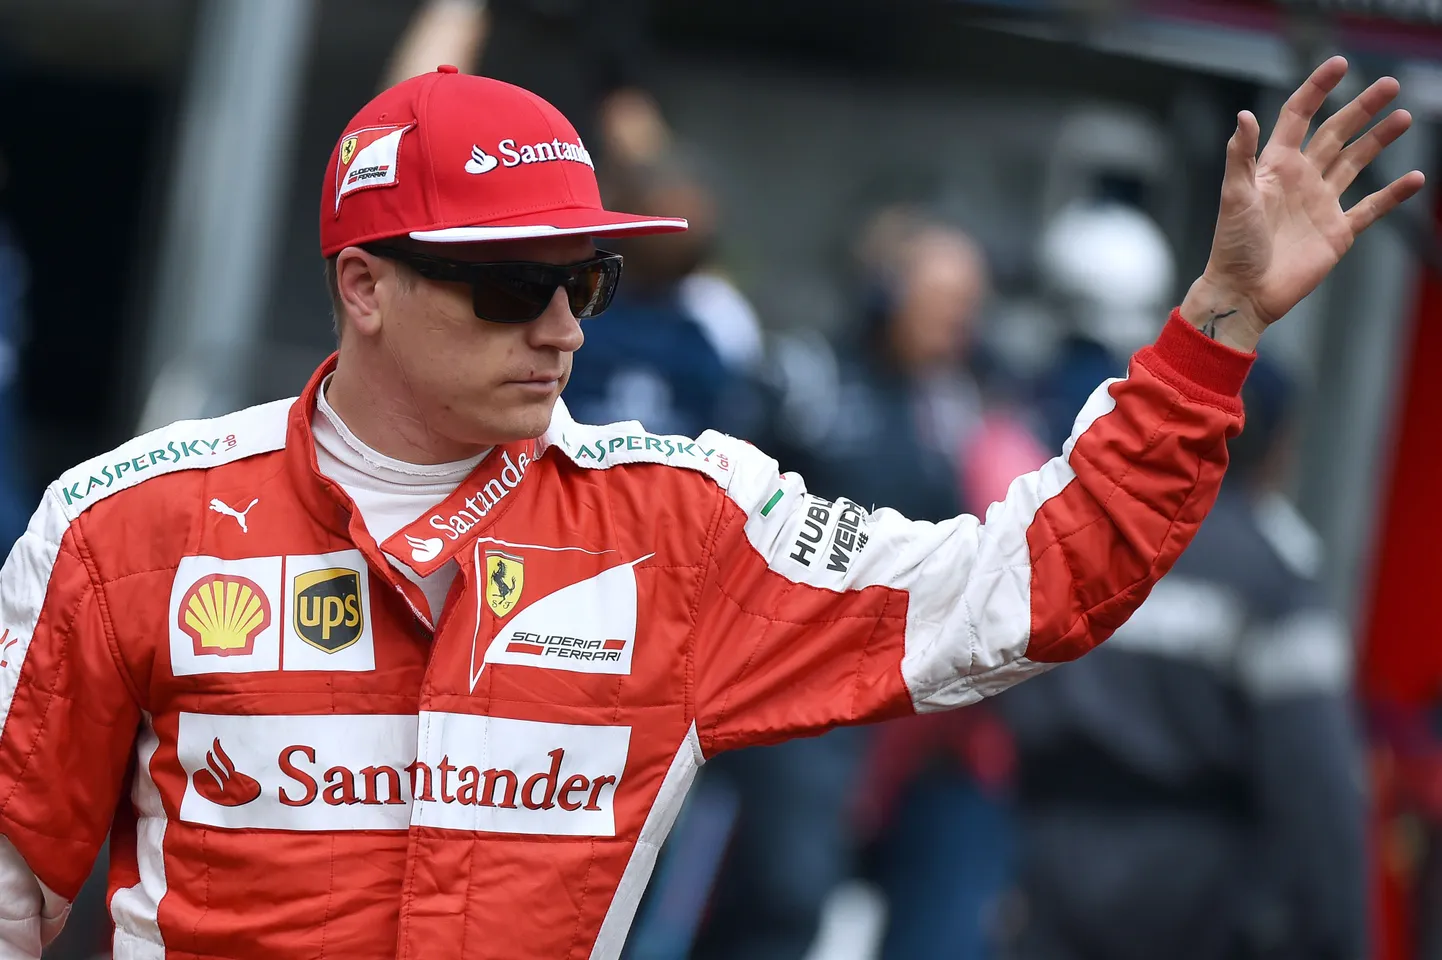 Kimi Räikkönen võib Ferrari värvides sõita ka järgmisel aastal.